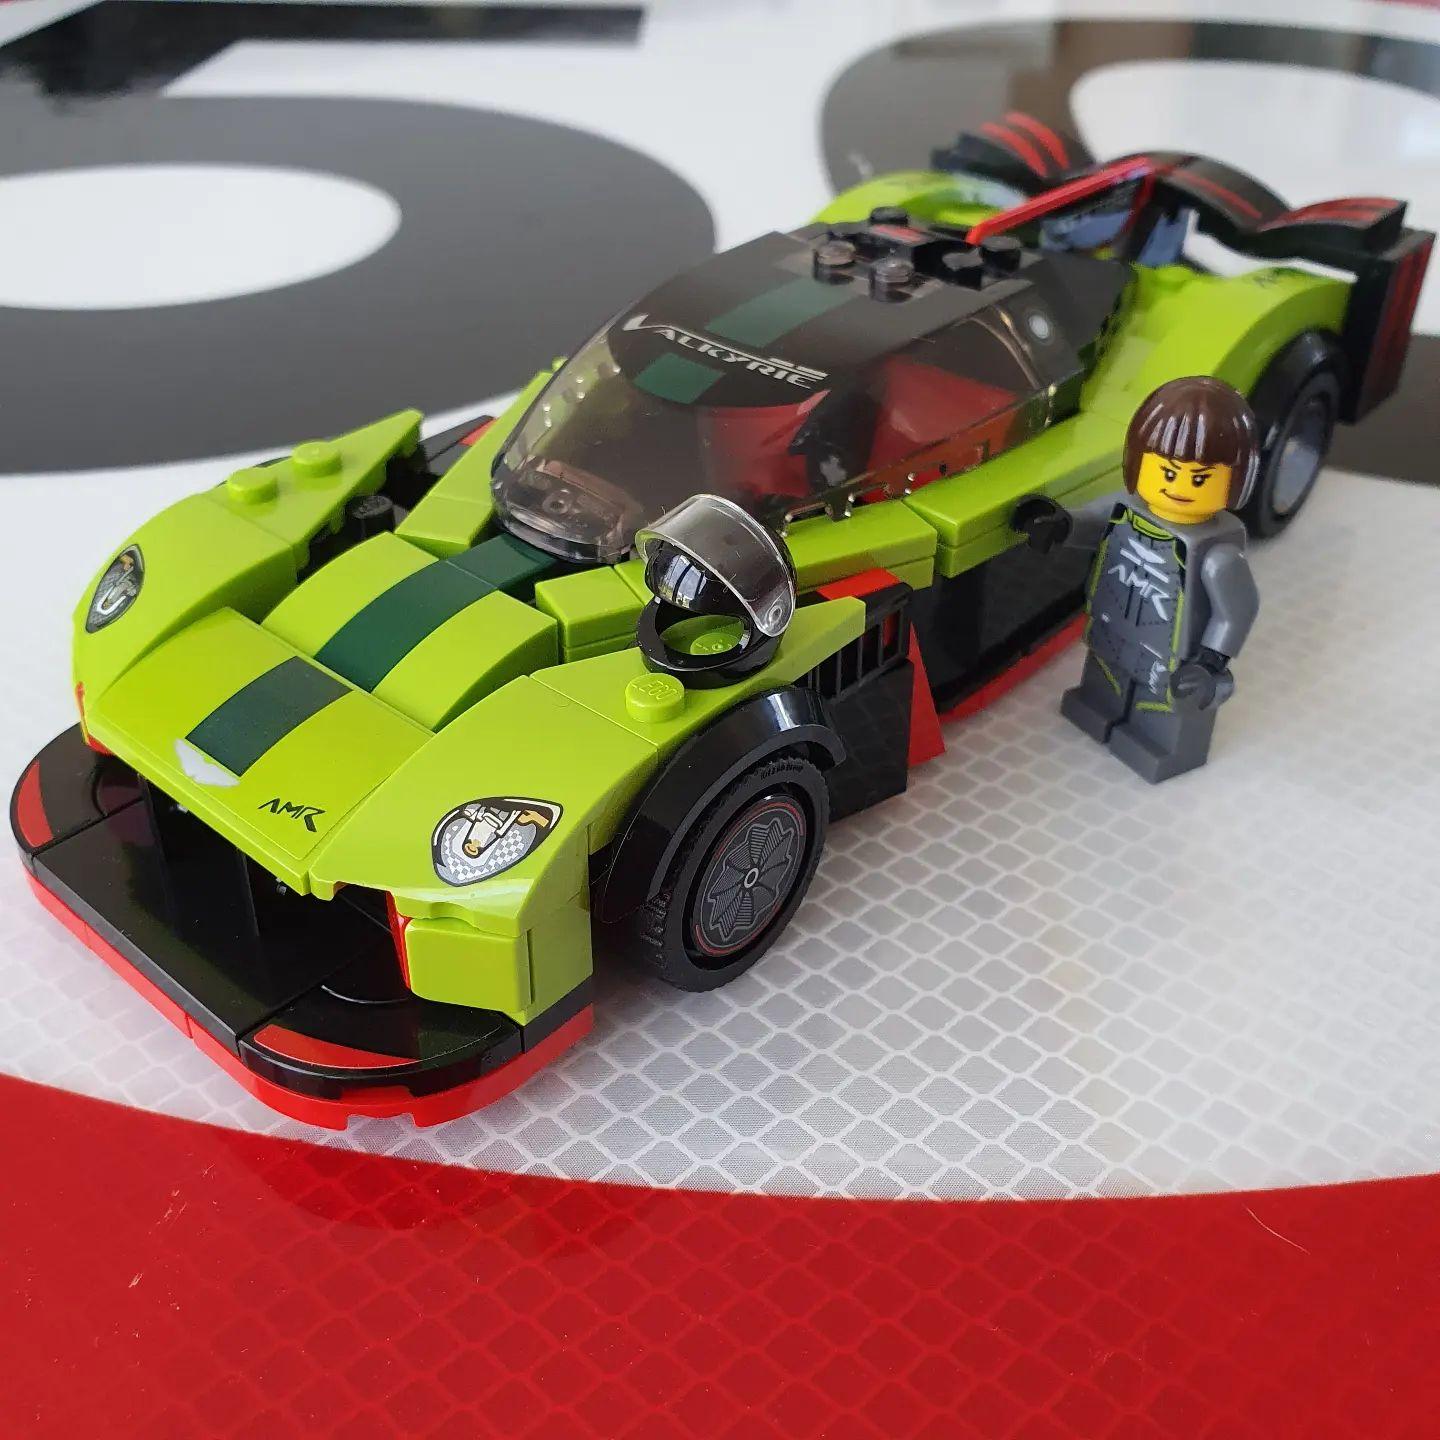 Brinquedo Lego Carros de Corrida Speed Champions Aston Martin Para Crianças  +9 Anos 592 Pçs